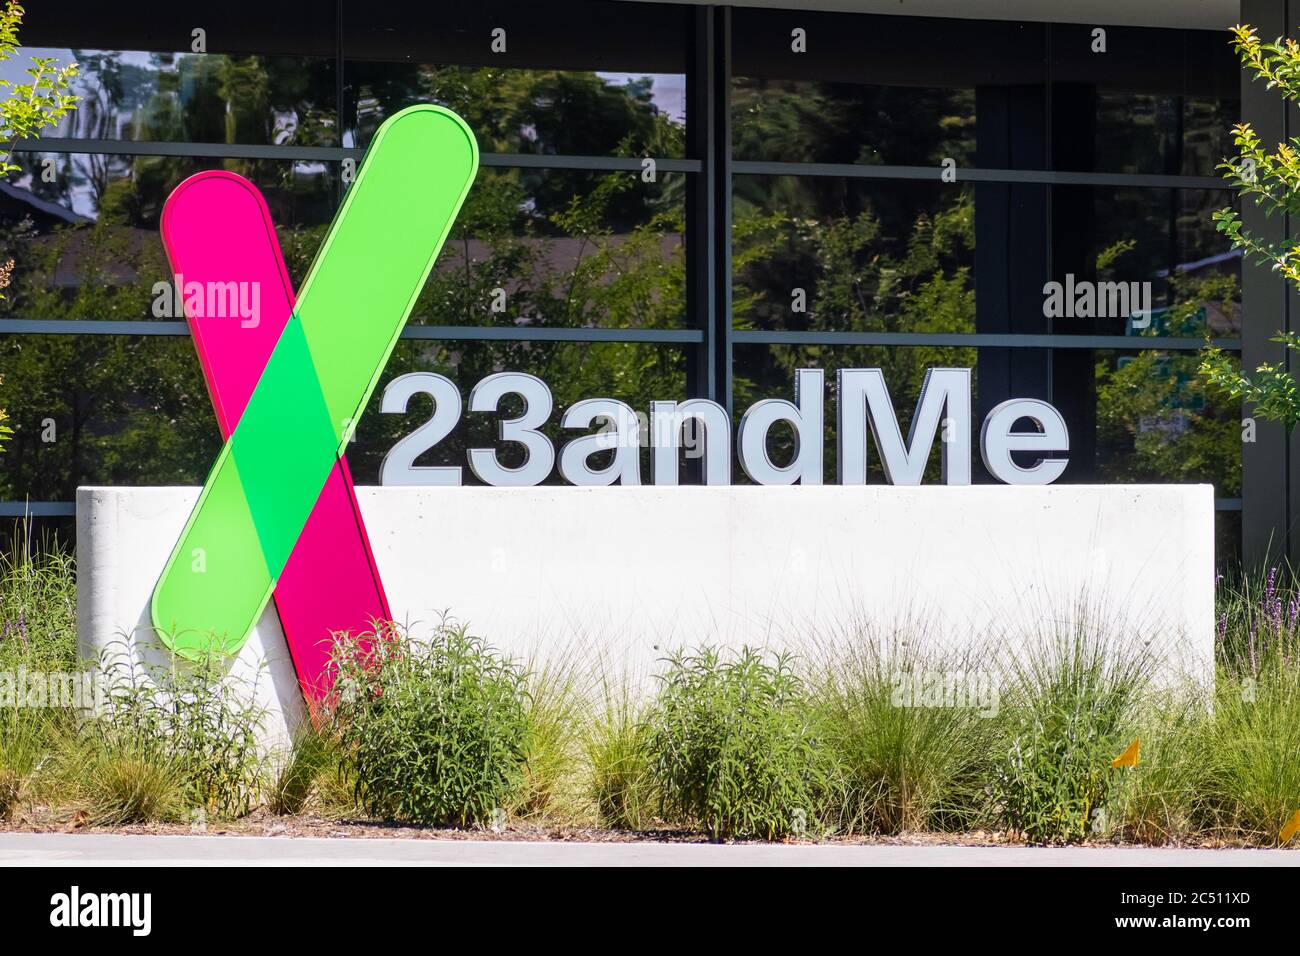 19 Giugno 2020 Sunnyvale / CA / USA - il 23andme logo presso la loro nuova sede in Silicon Valley; sulla base di un campione di saliva, 23andMe fornisce rapporti Foto Stock